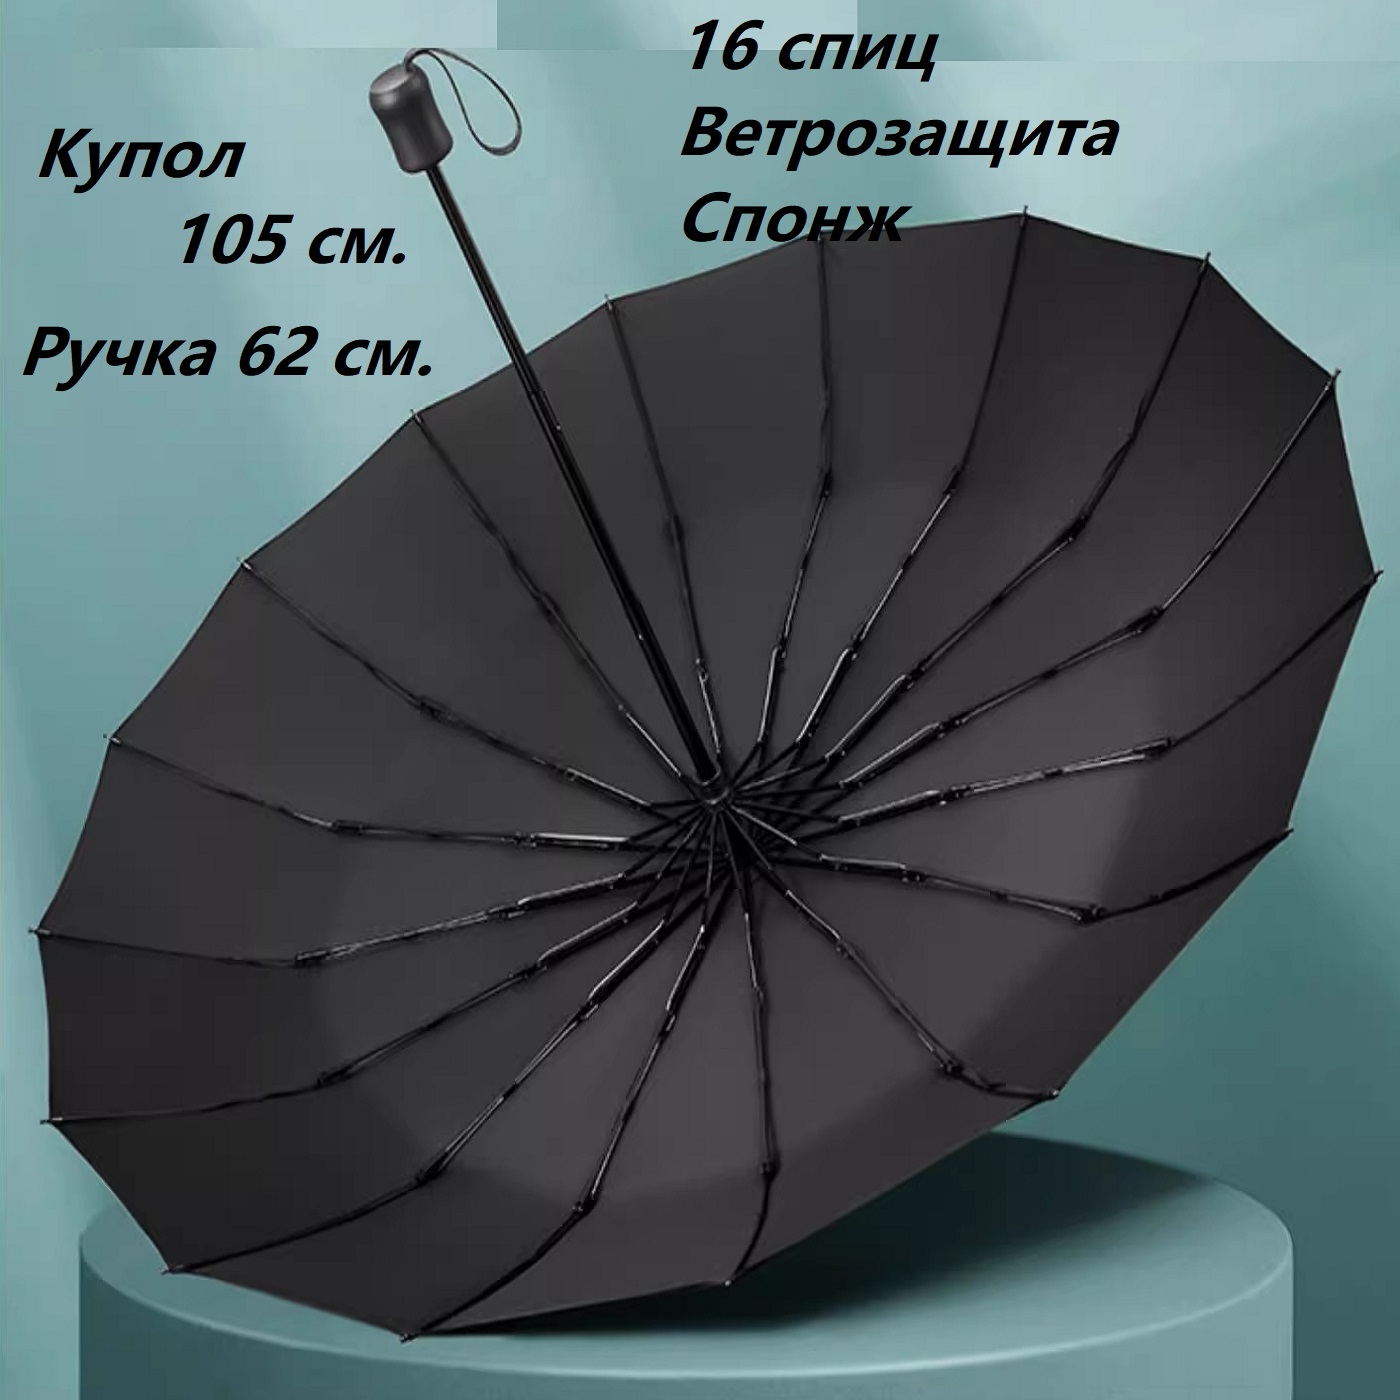 Зонт большой купол 105 см., черный, 16 спиц, автомат, понж, ветрозащита Premium